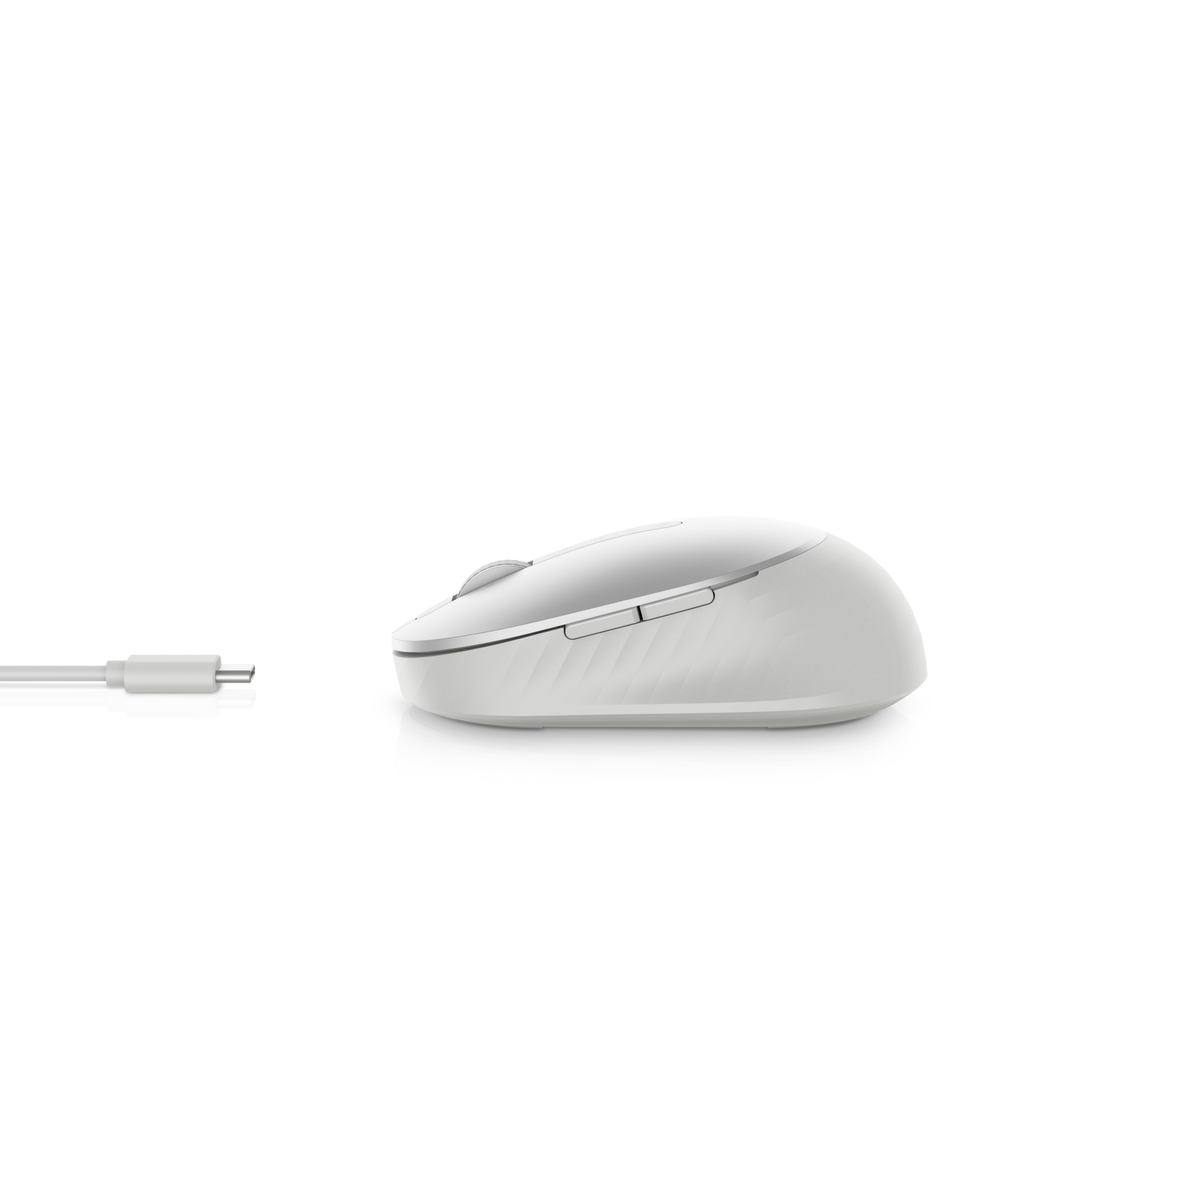 Maus, DELL 7 1.600 Weiß optische MS7421W USB, (kabellos, Tasten, dpi) silber Maus Bluetooth, Premier beidhändig,